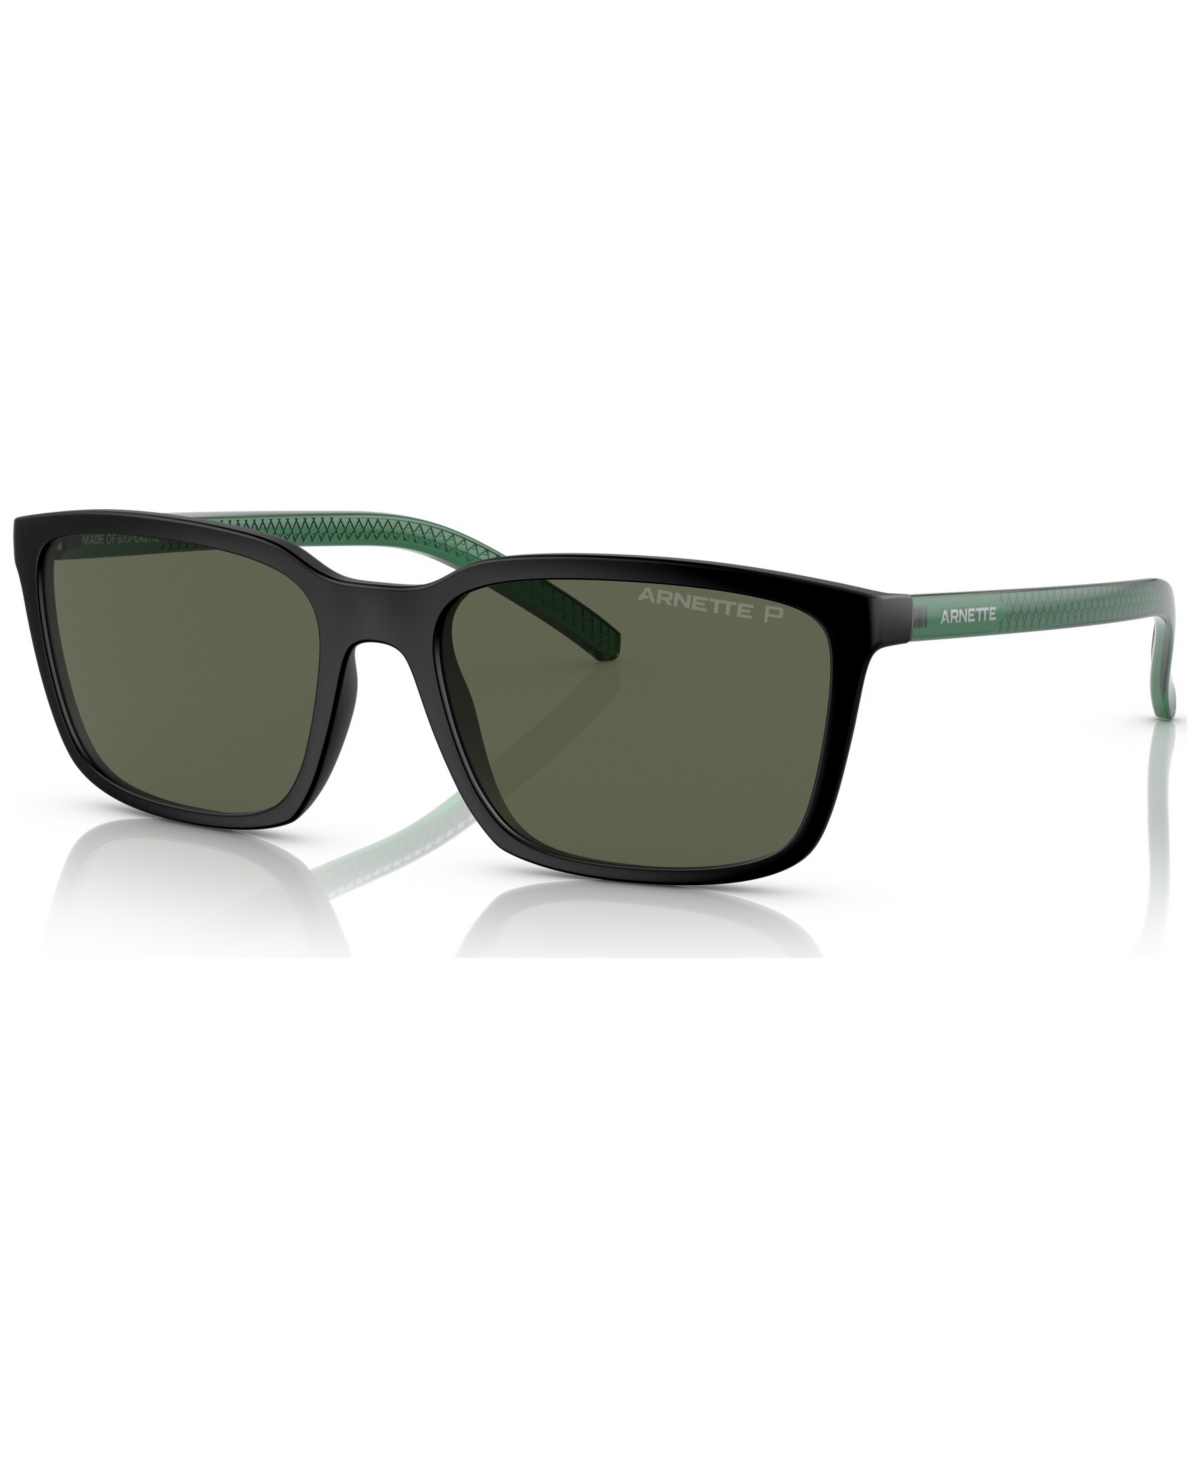 Arnette Men's Polarized Sunglasses, AN431156-p